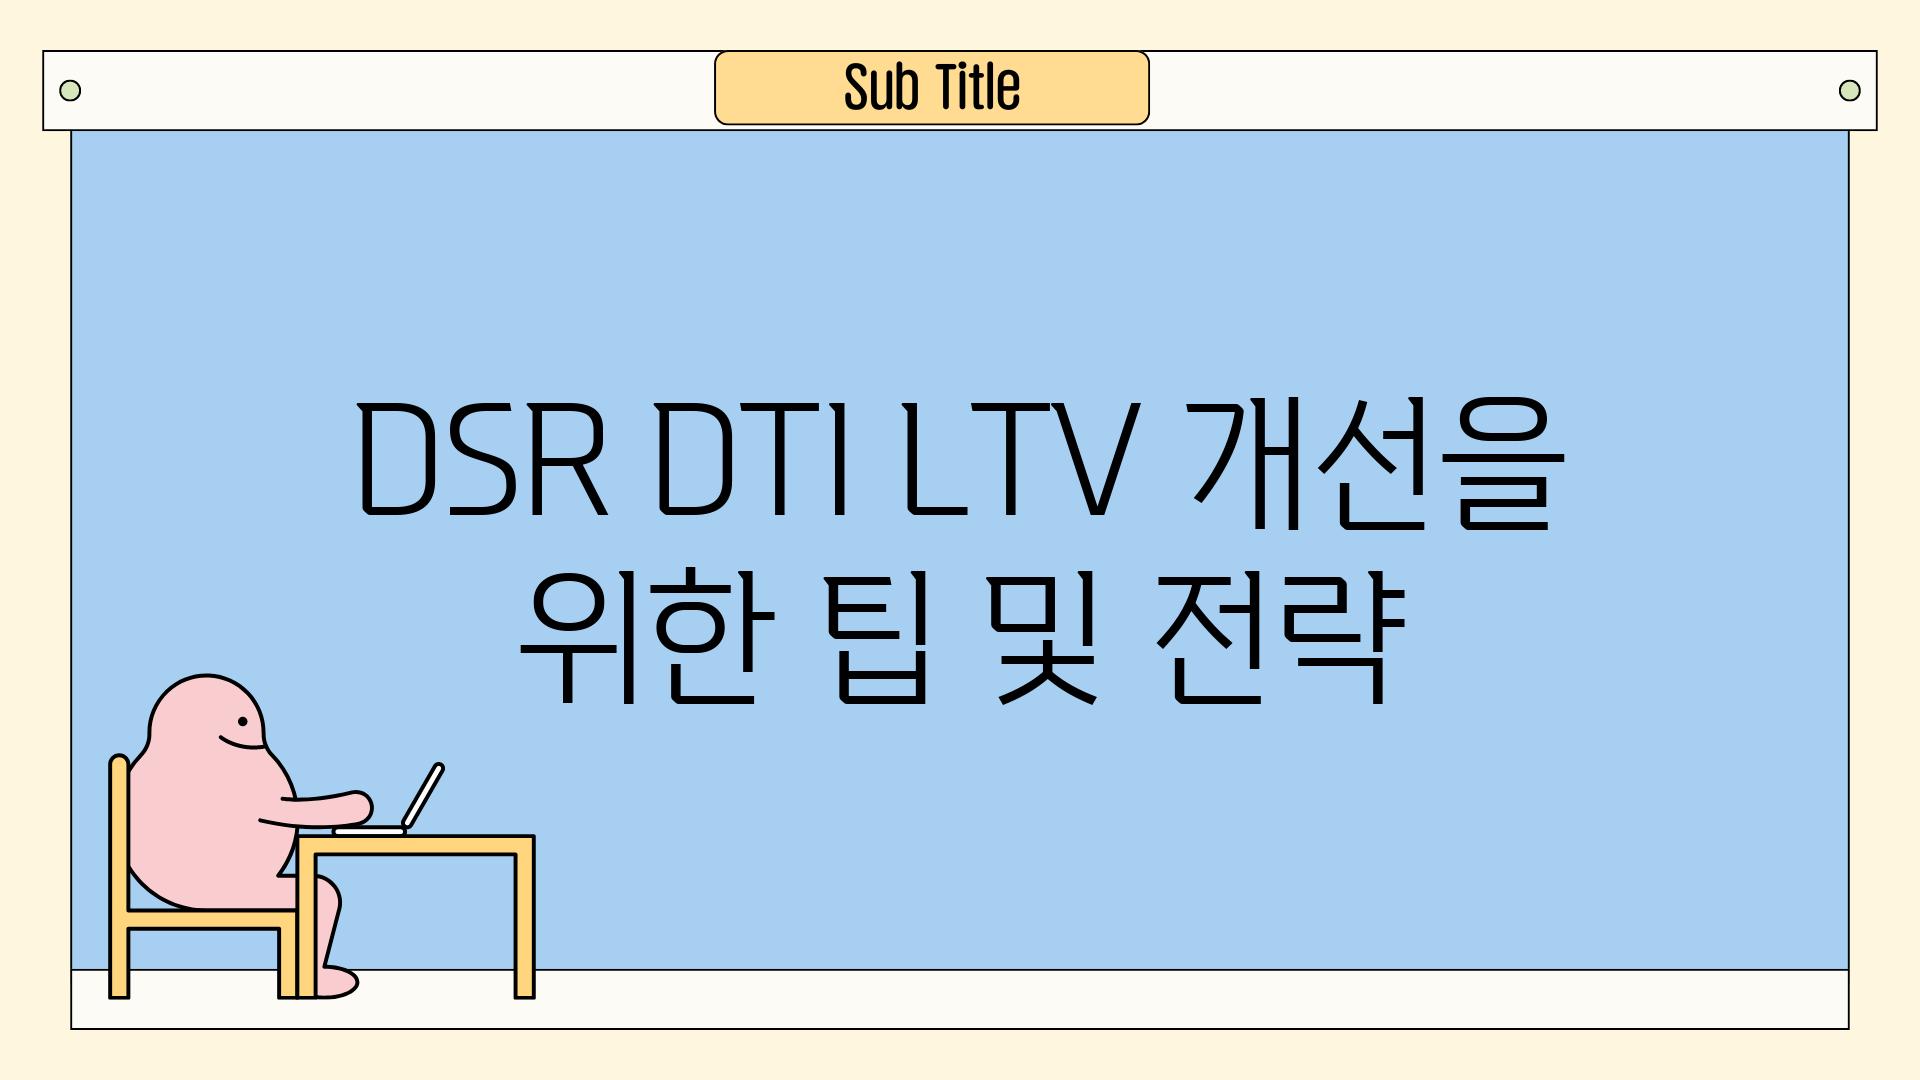 DSR DTI LTV 개선을 위한 팁 및 전략